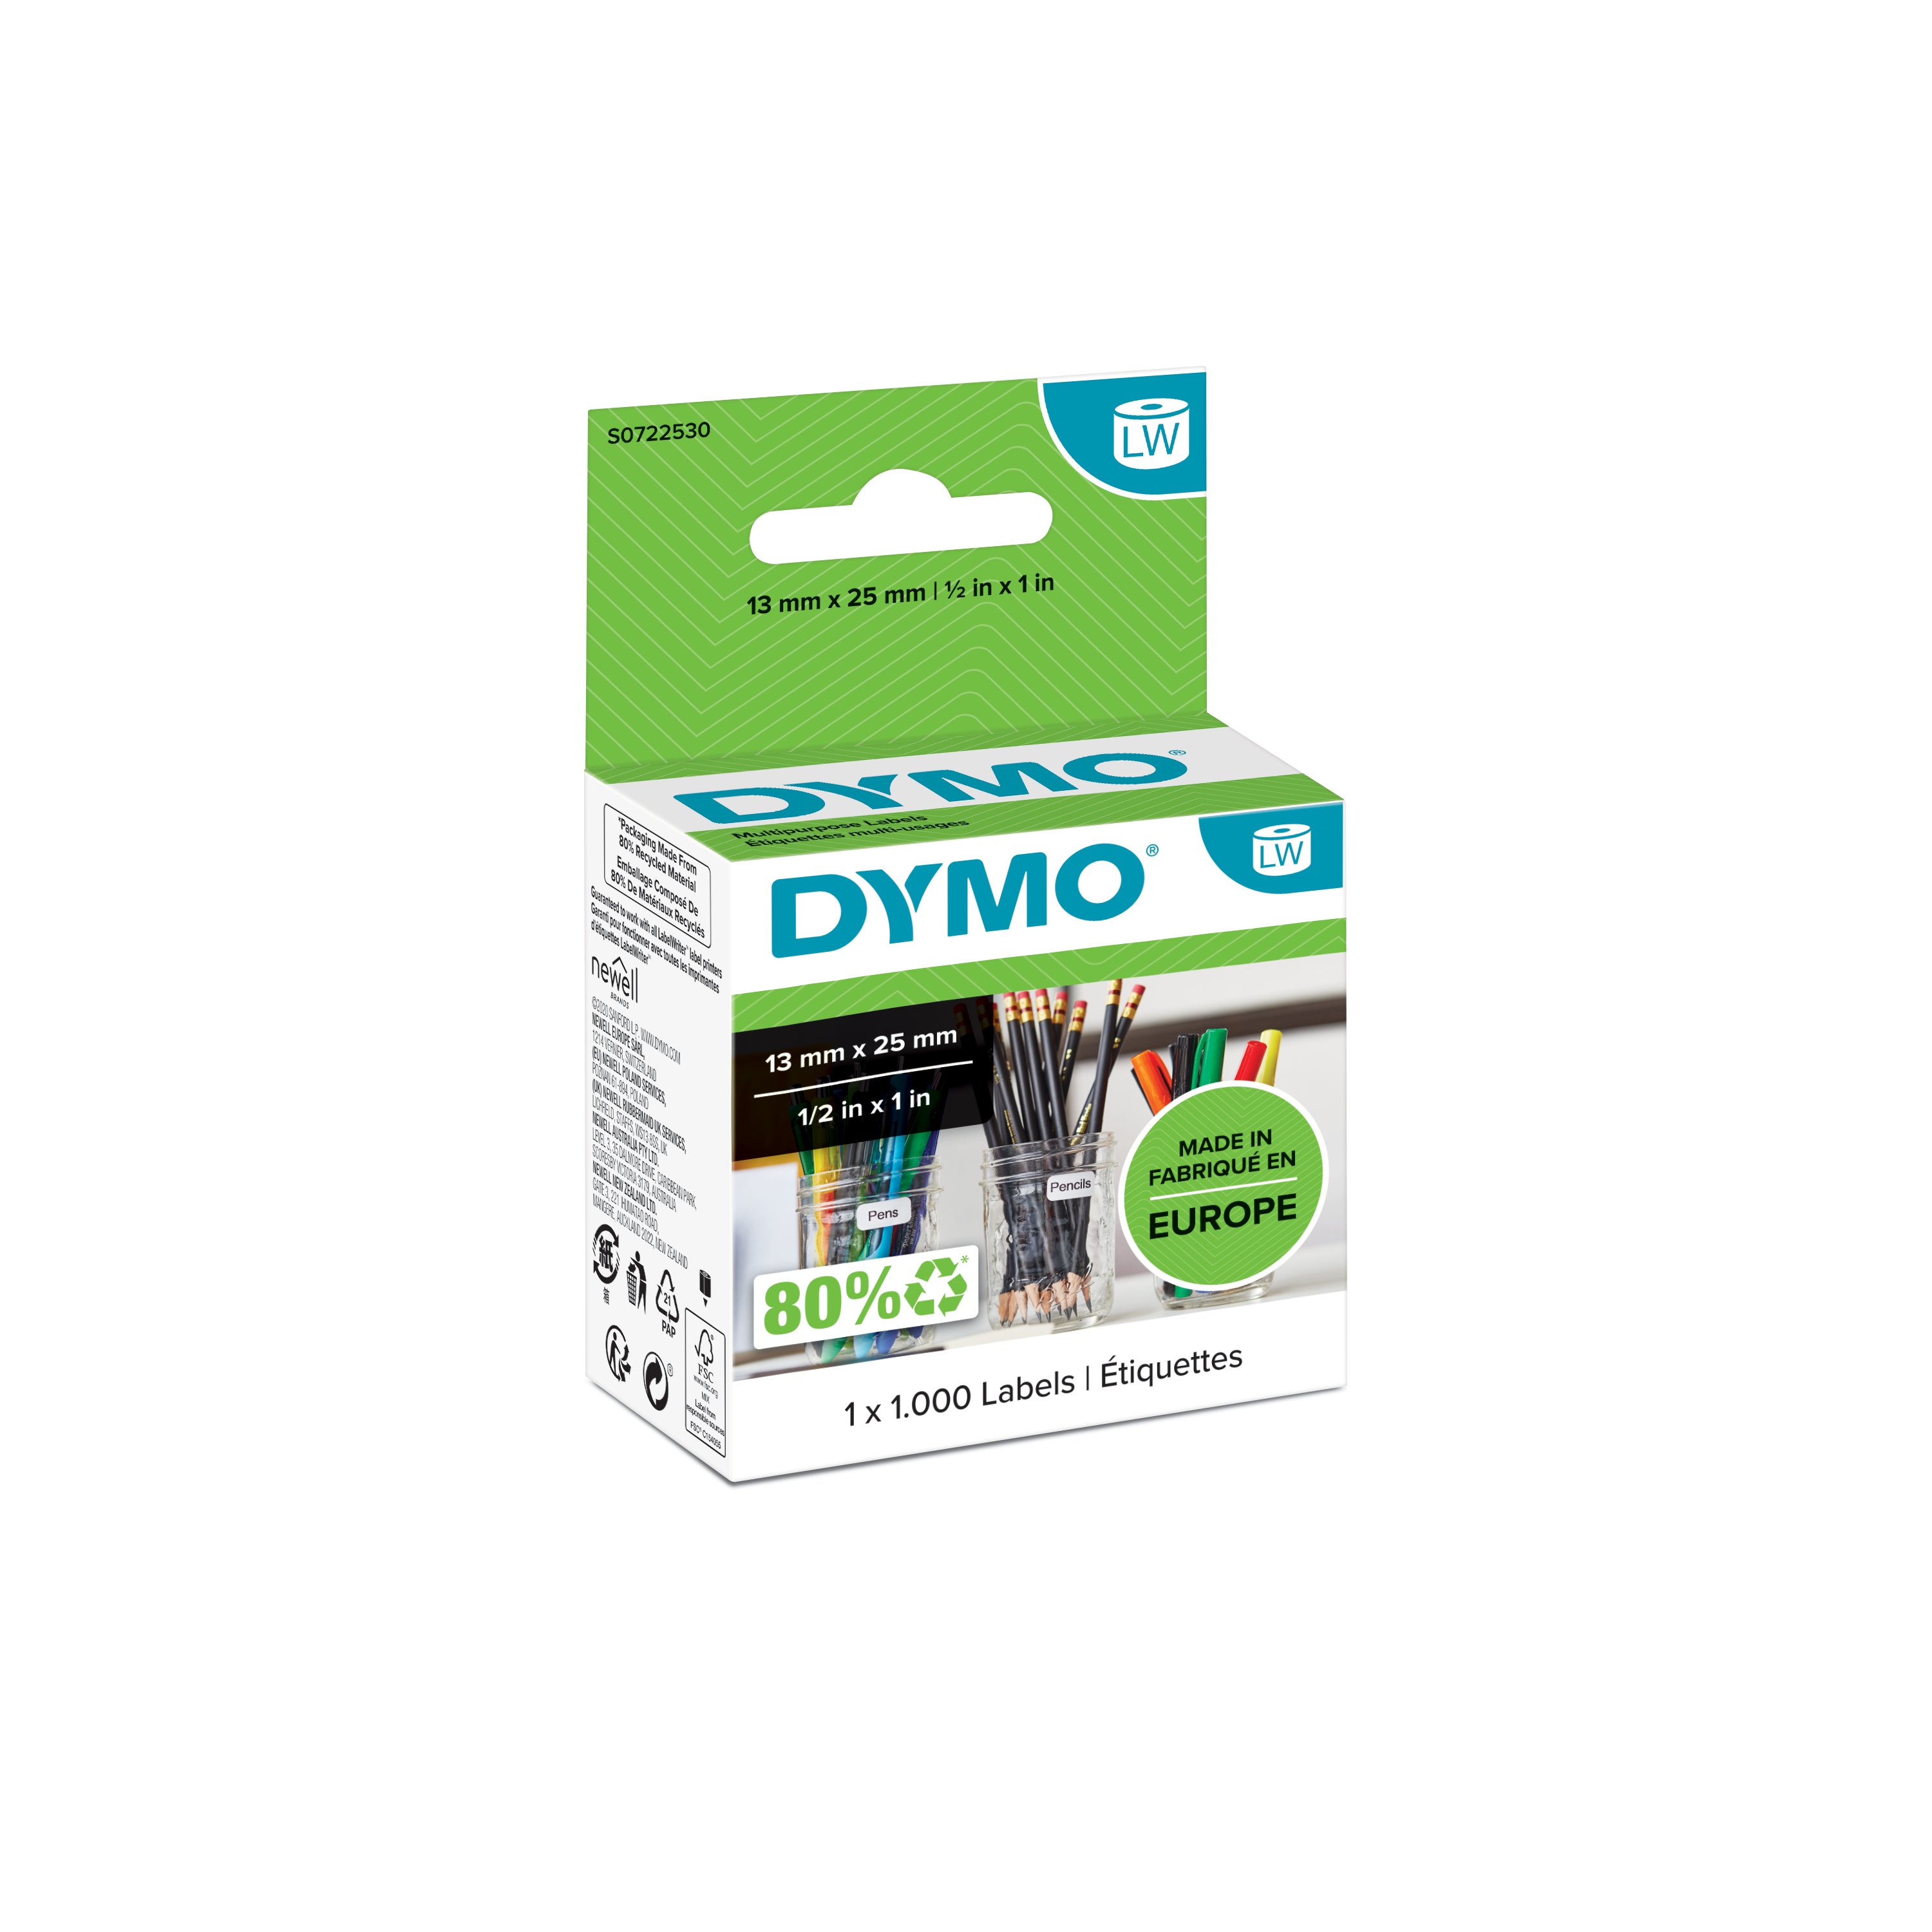 DYMO LabelWriter™ LW Çok Amaçlı Etiket, 1000 etiket/paket